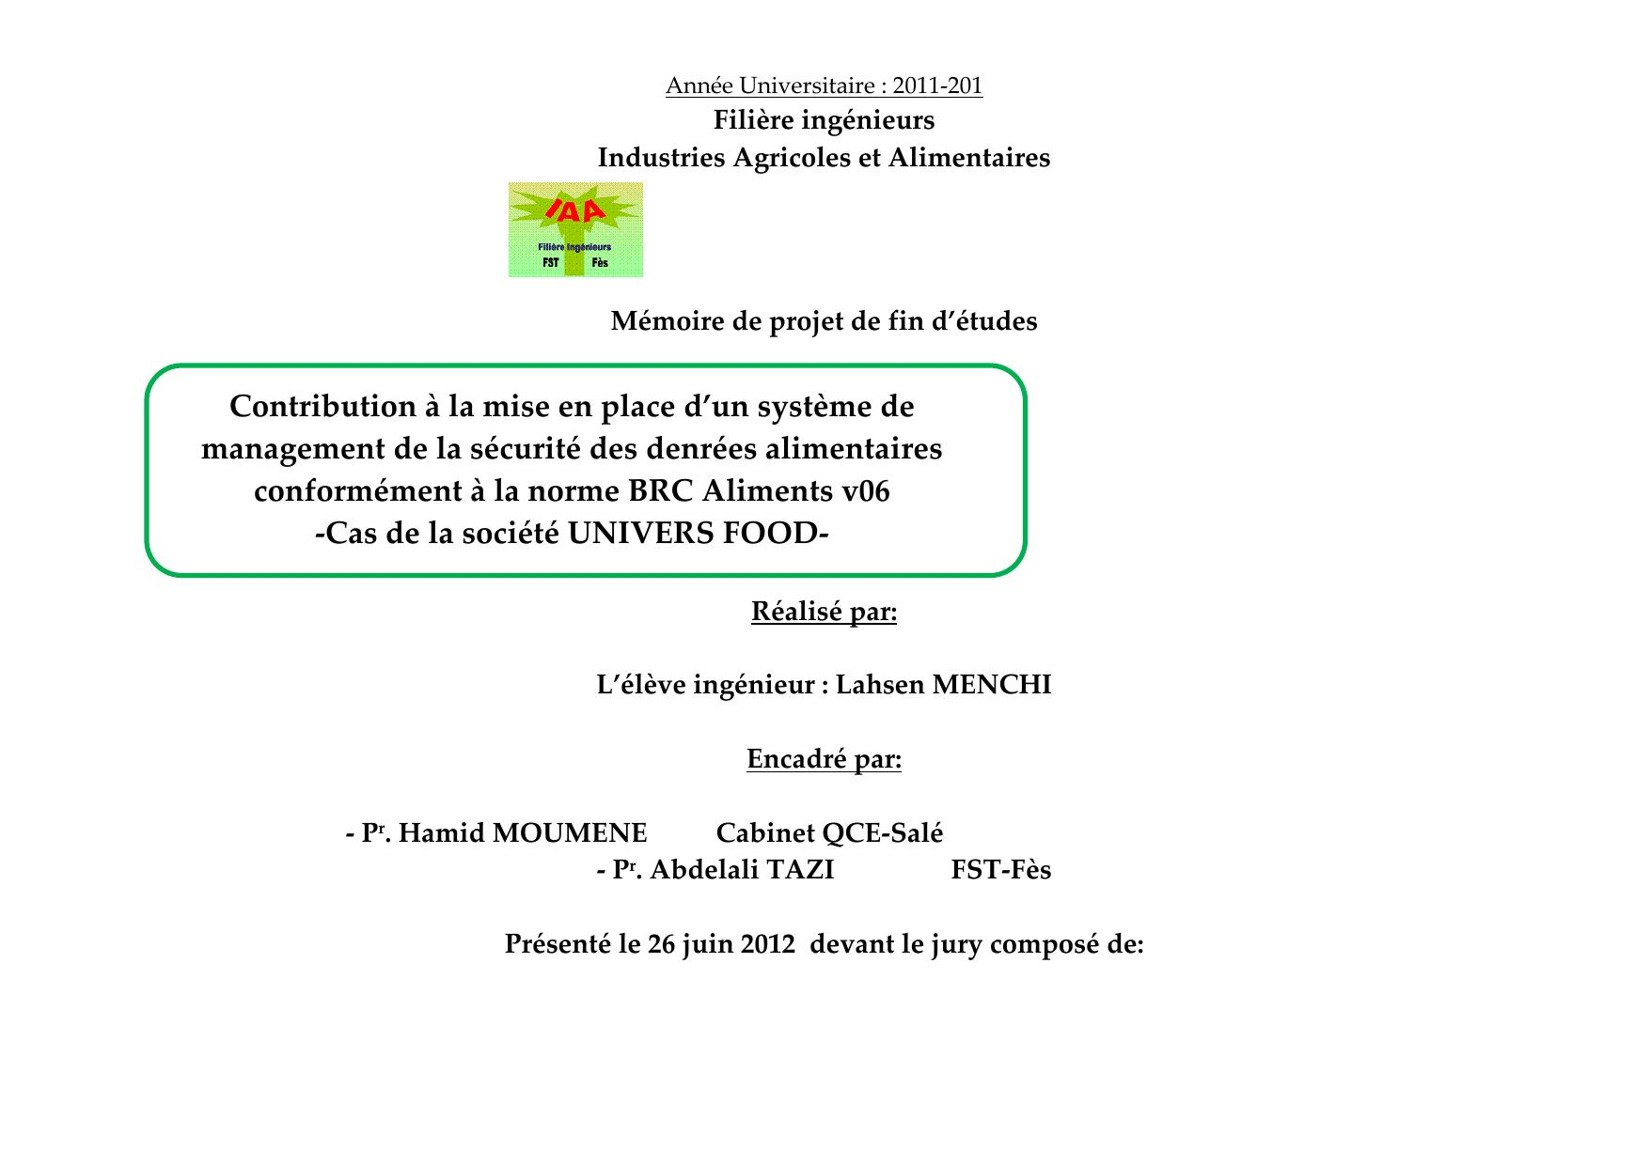 Contribution à la mise en place d’un système de management de la sécurité des denrées alimentaires conformément à la norme BRC Aliments v06 -Cas de la société UNIVERS FOOD